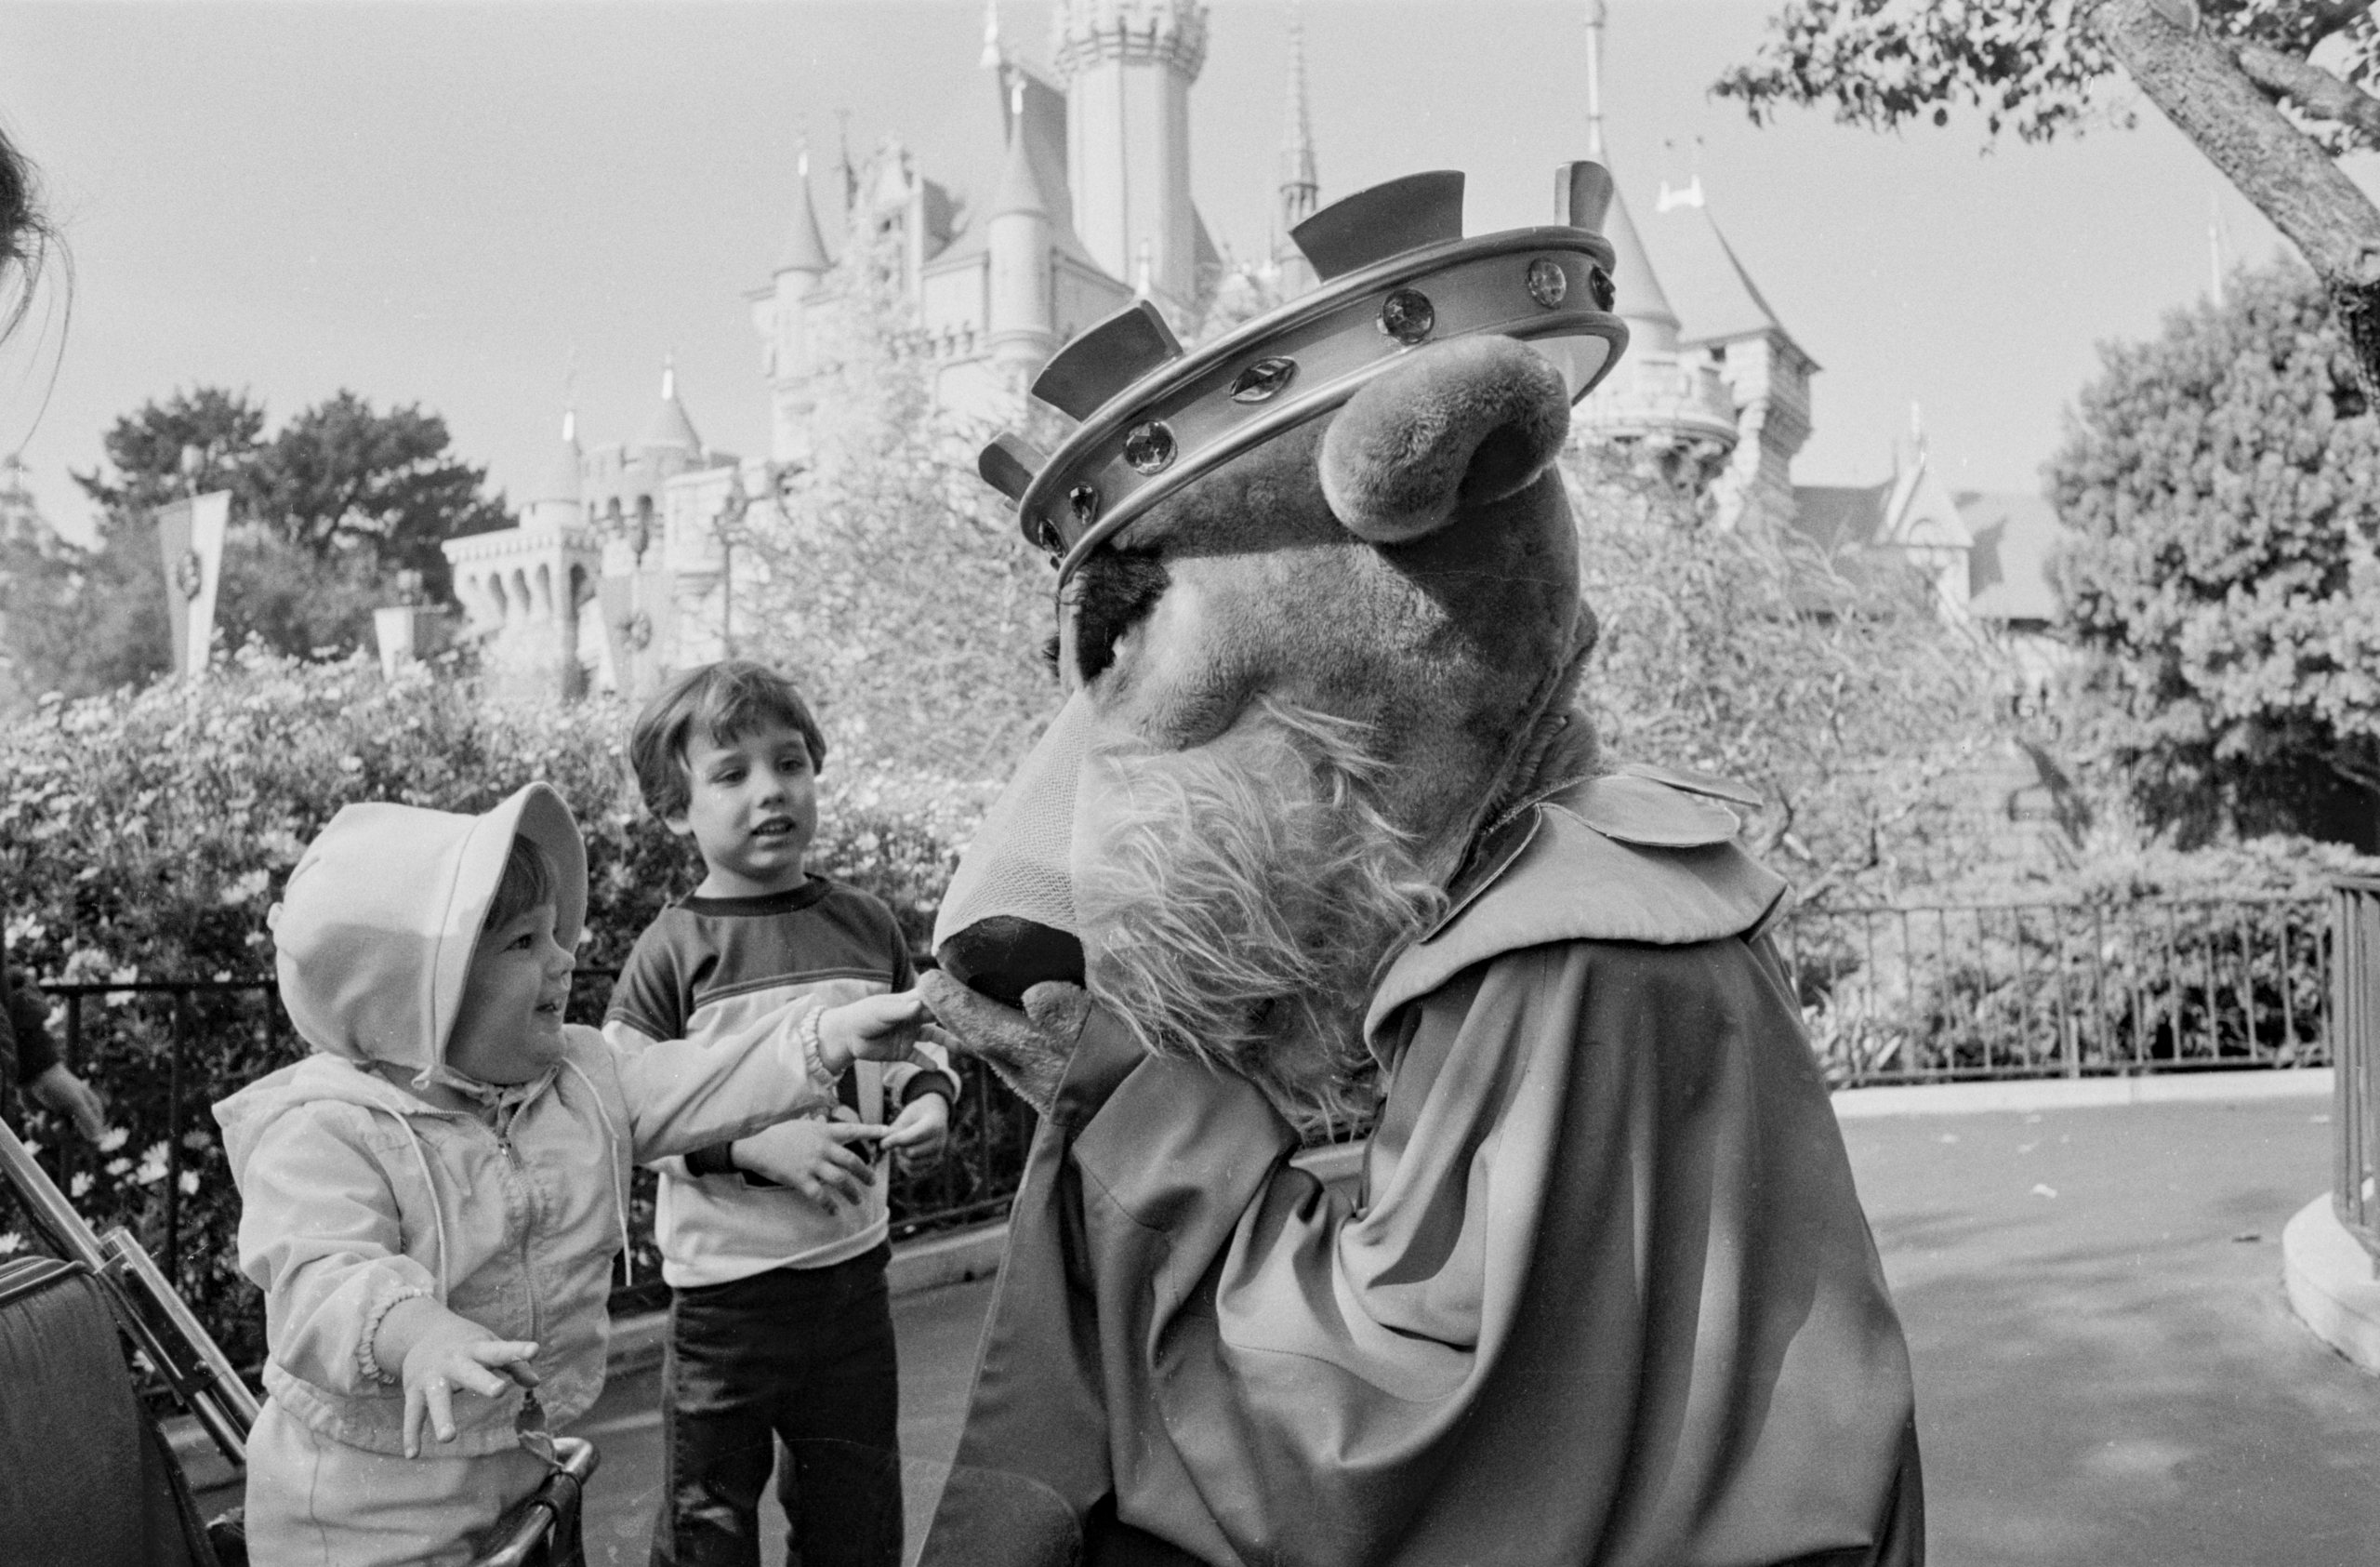 Parade de Noël à Disneyland en 1981